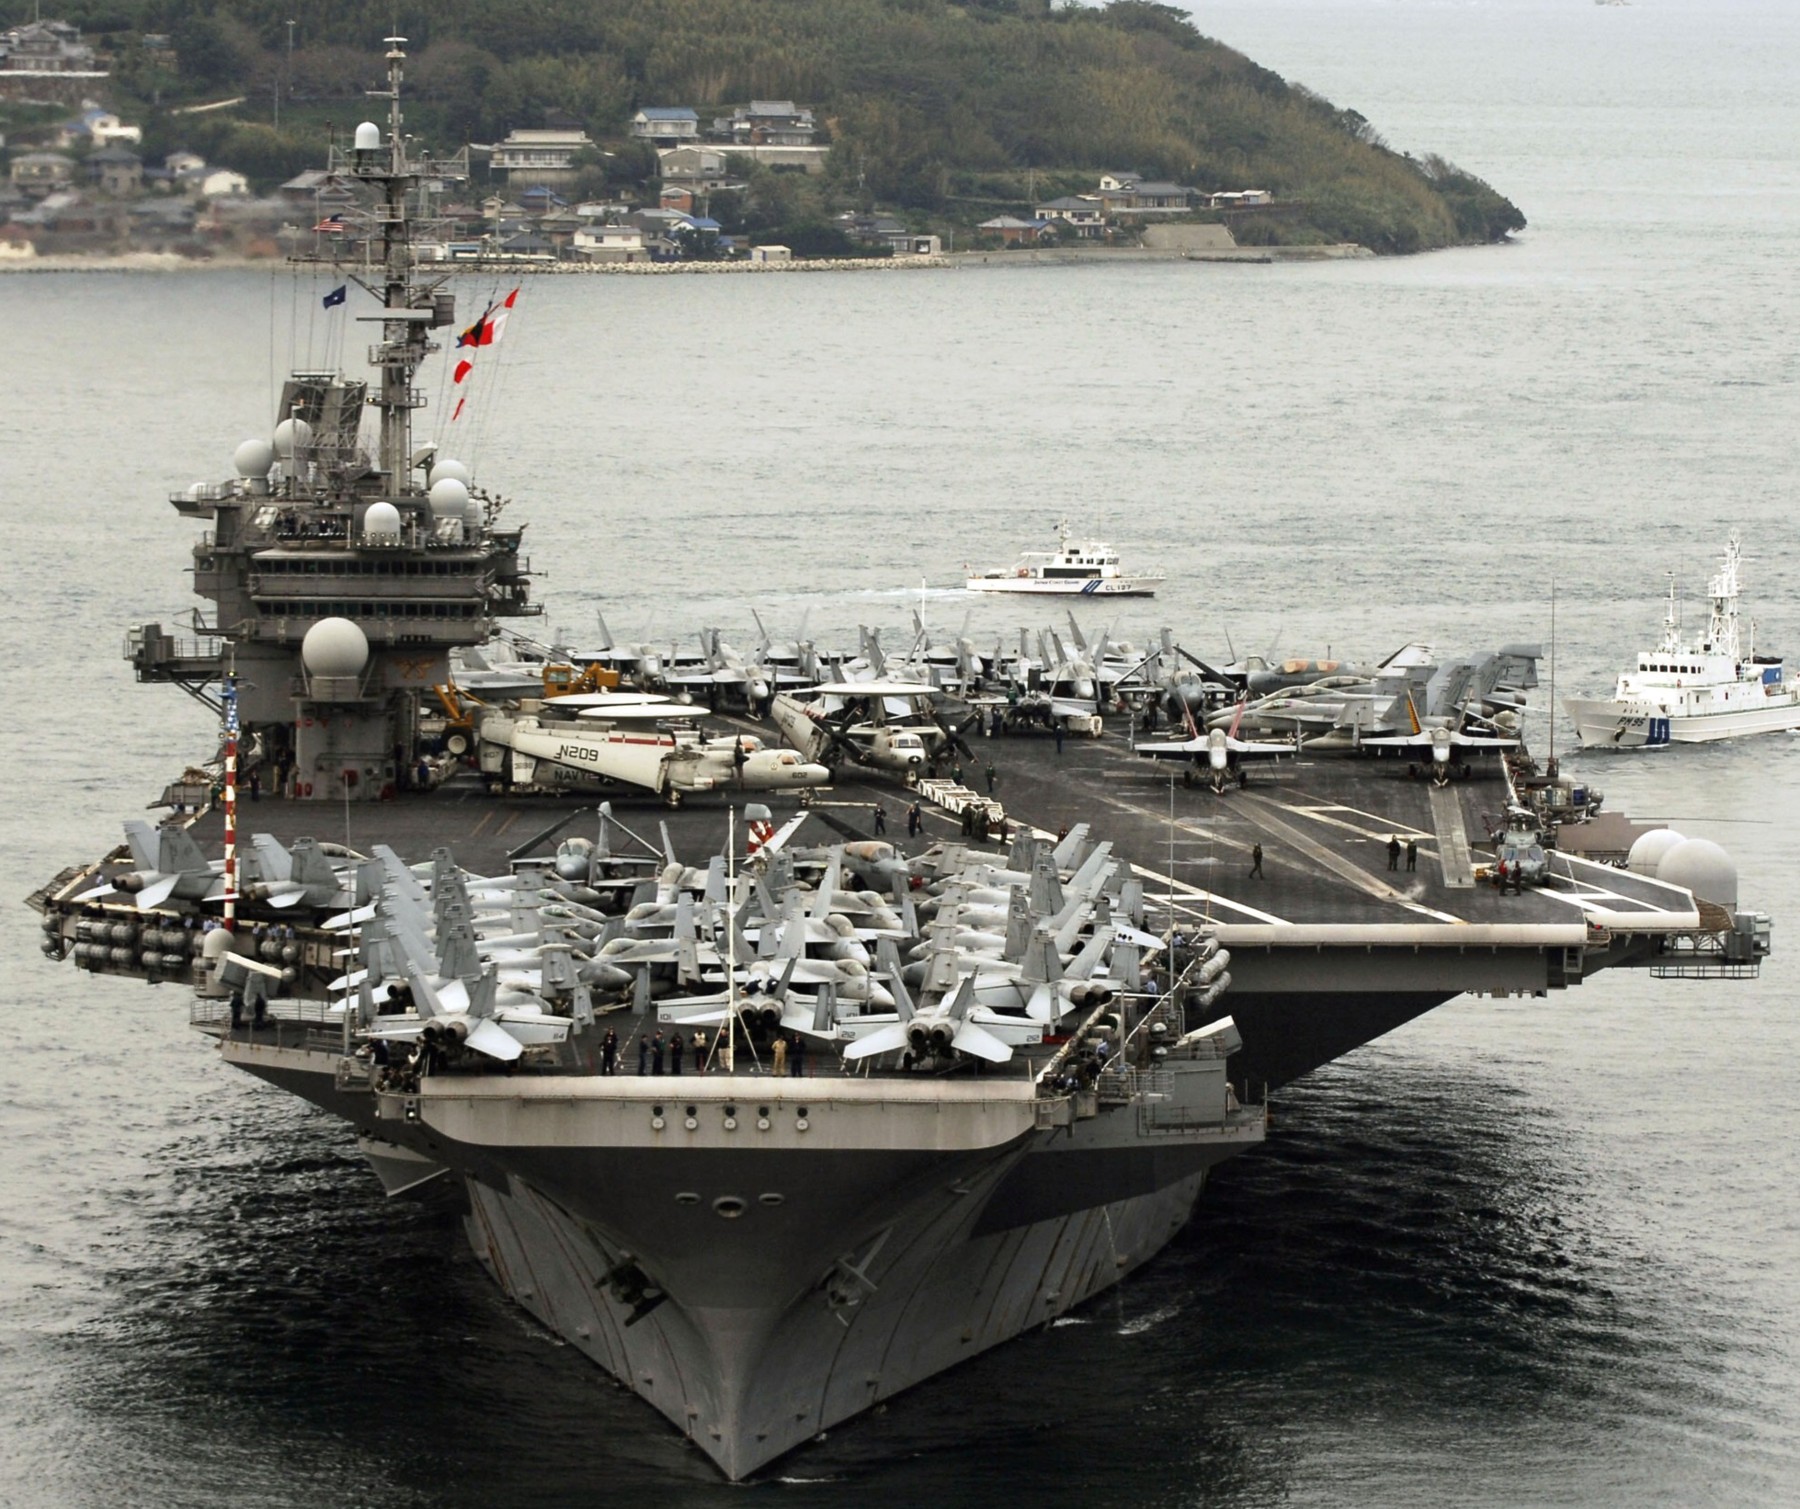 cv-63 uss kitty hawk aircraft carrier air wing cvw-5 us navy 116 sasebo japan port visit